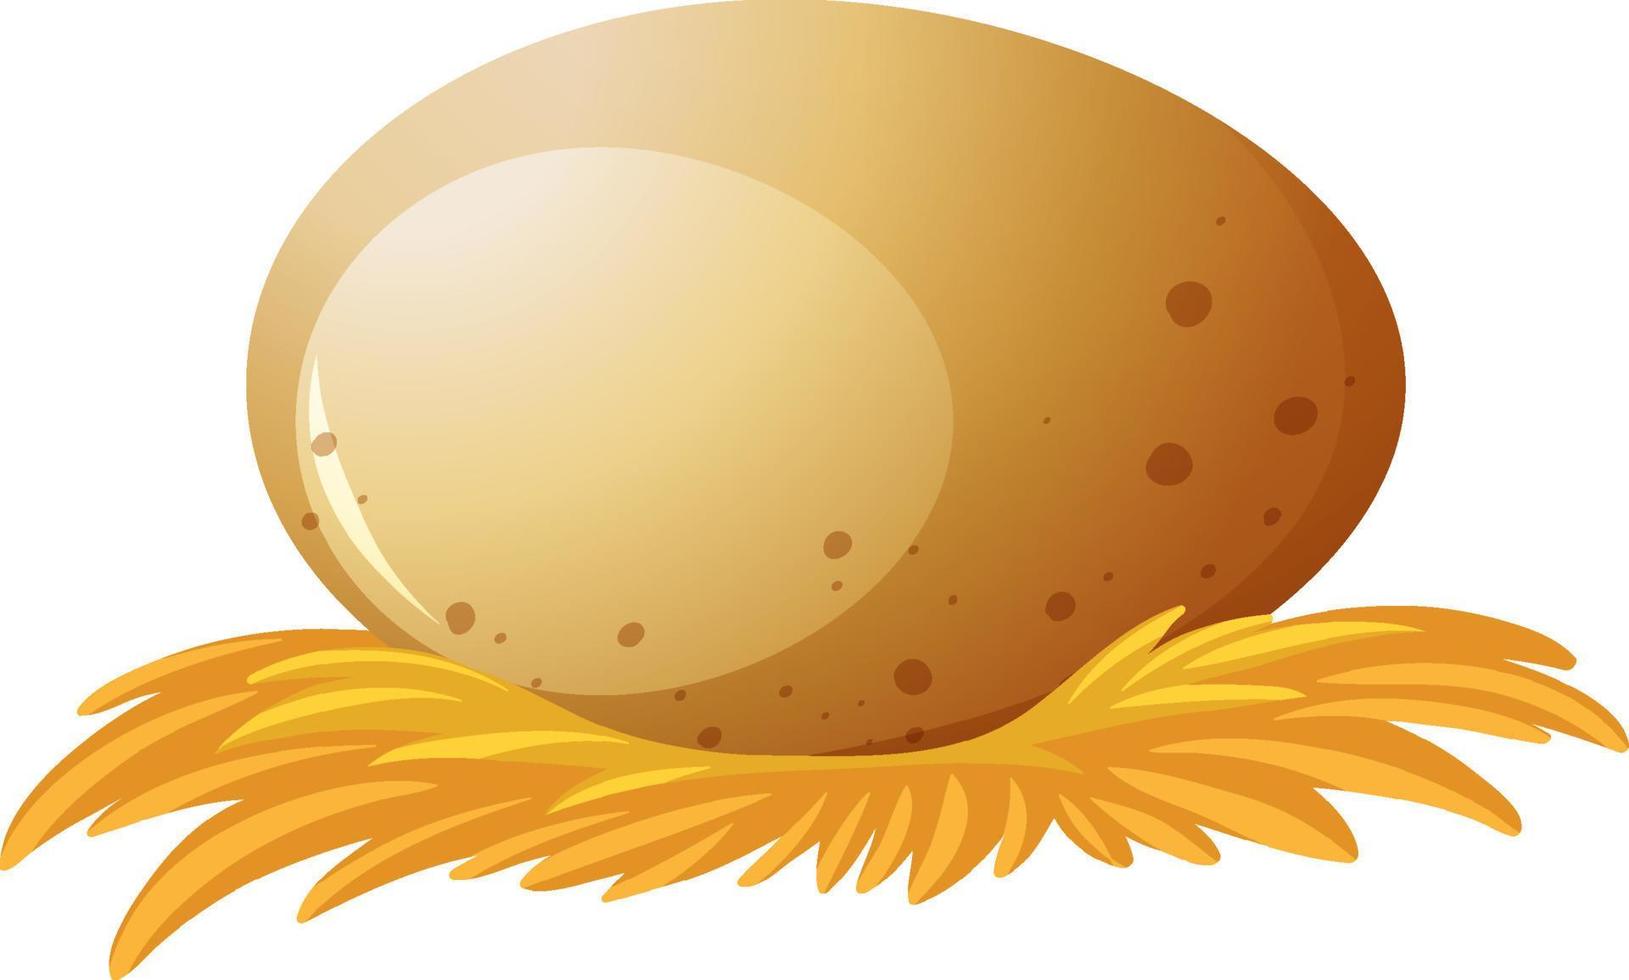 ovo de galinha ou pato no ninho de feno vetor